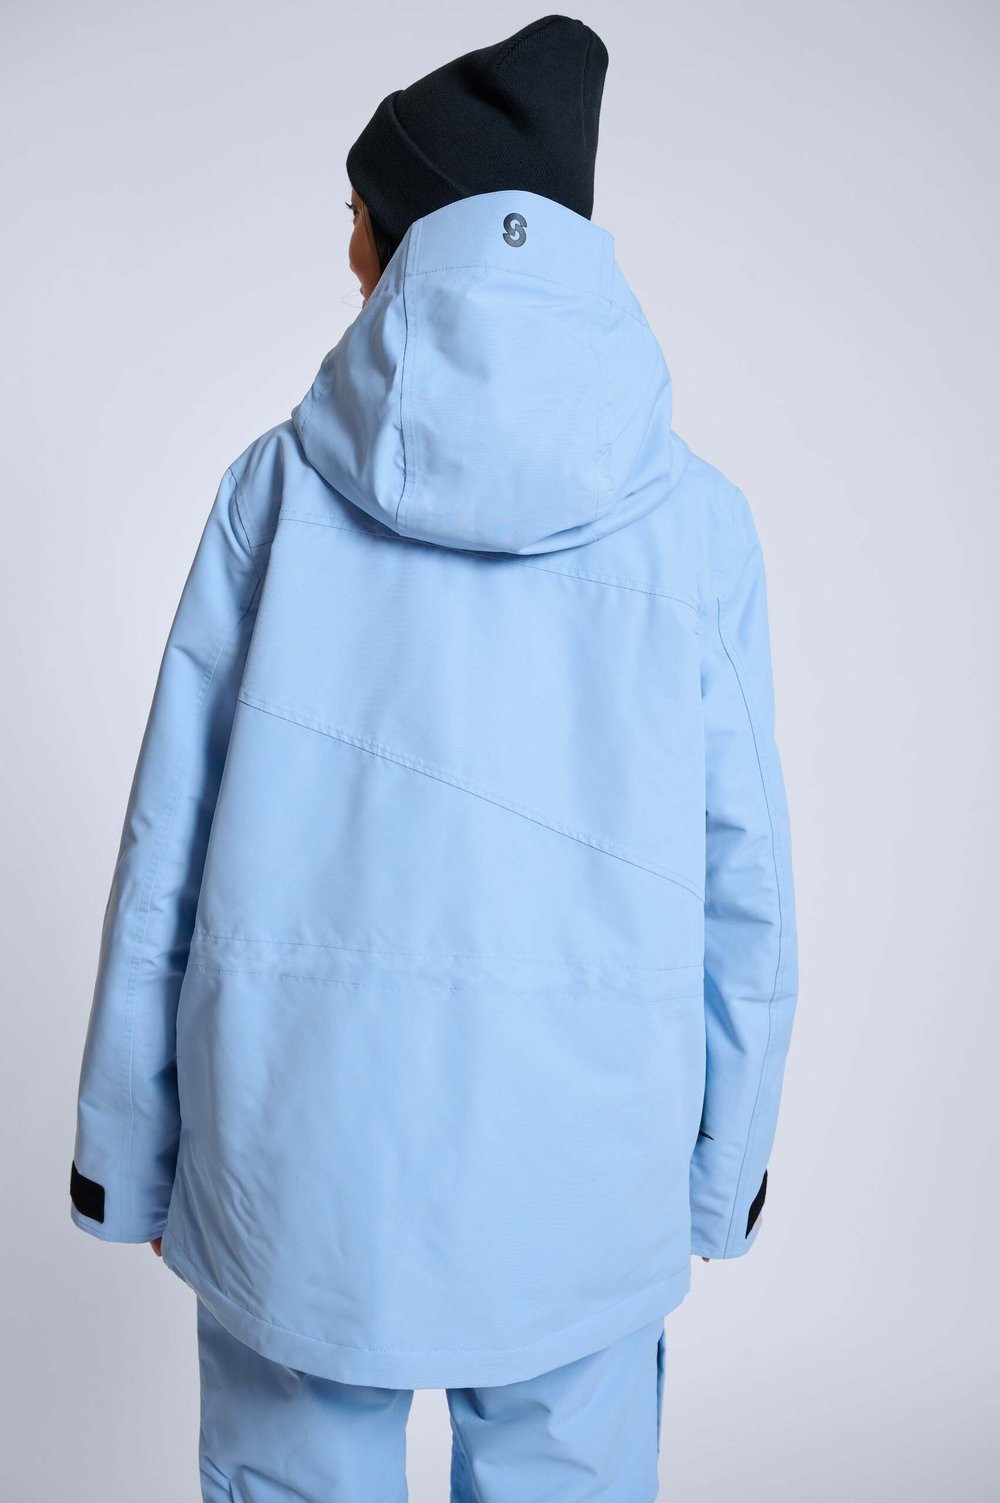 aura-blue-jacket-031-min.jpg